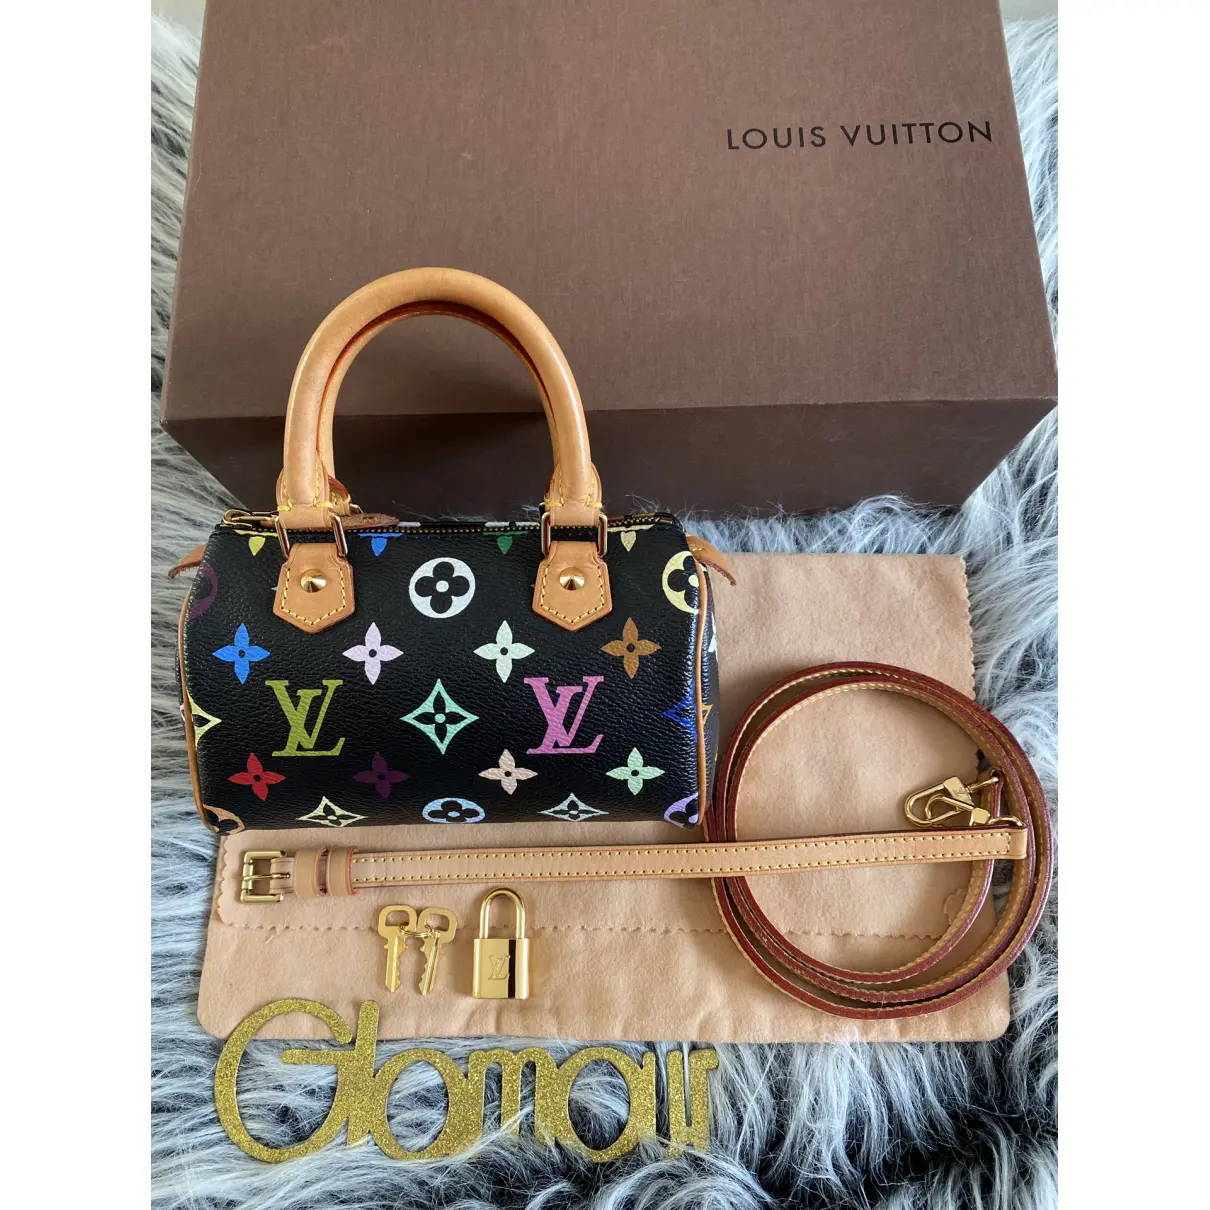 Buy Louis Vuitton Vegan leather mini bag online - Vintage